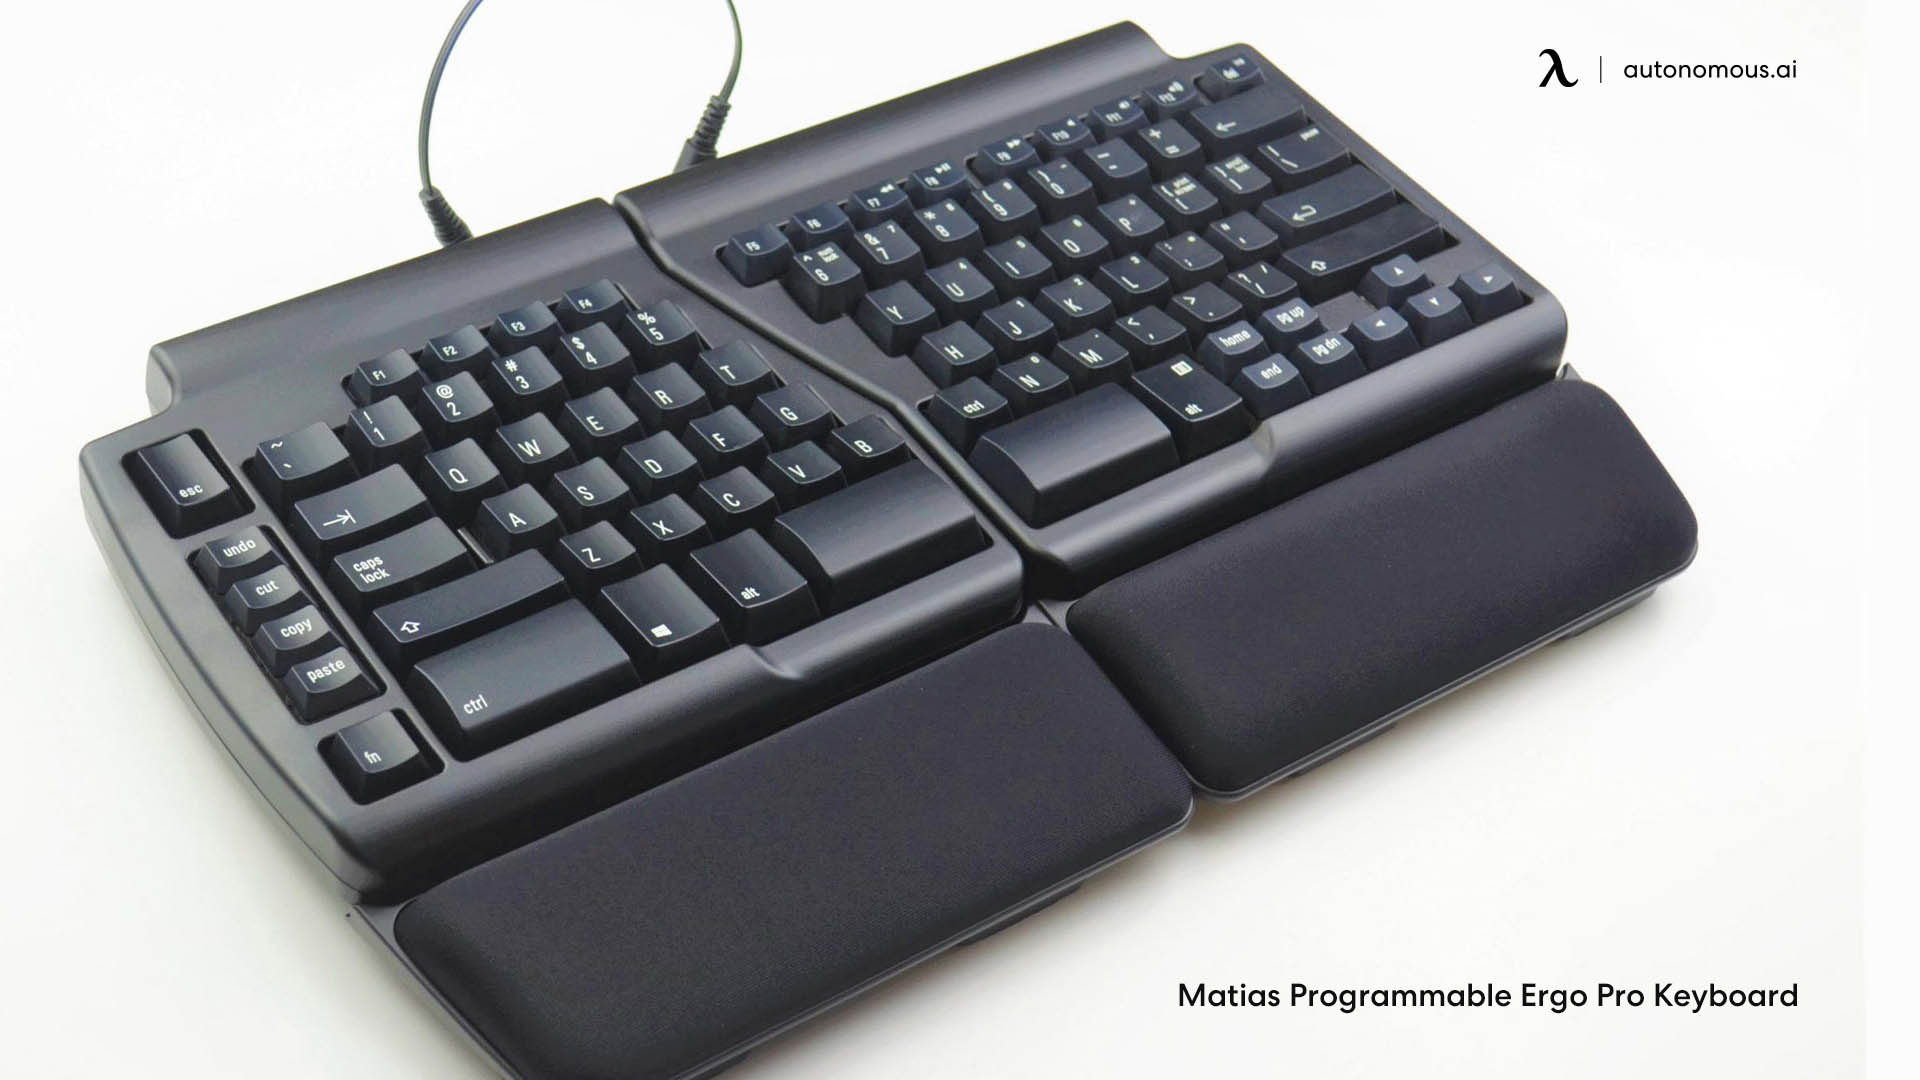 Matias Programmable Ergo Pro split 75% keyboard